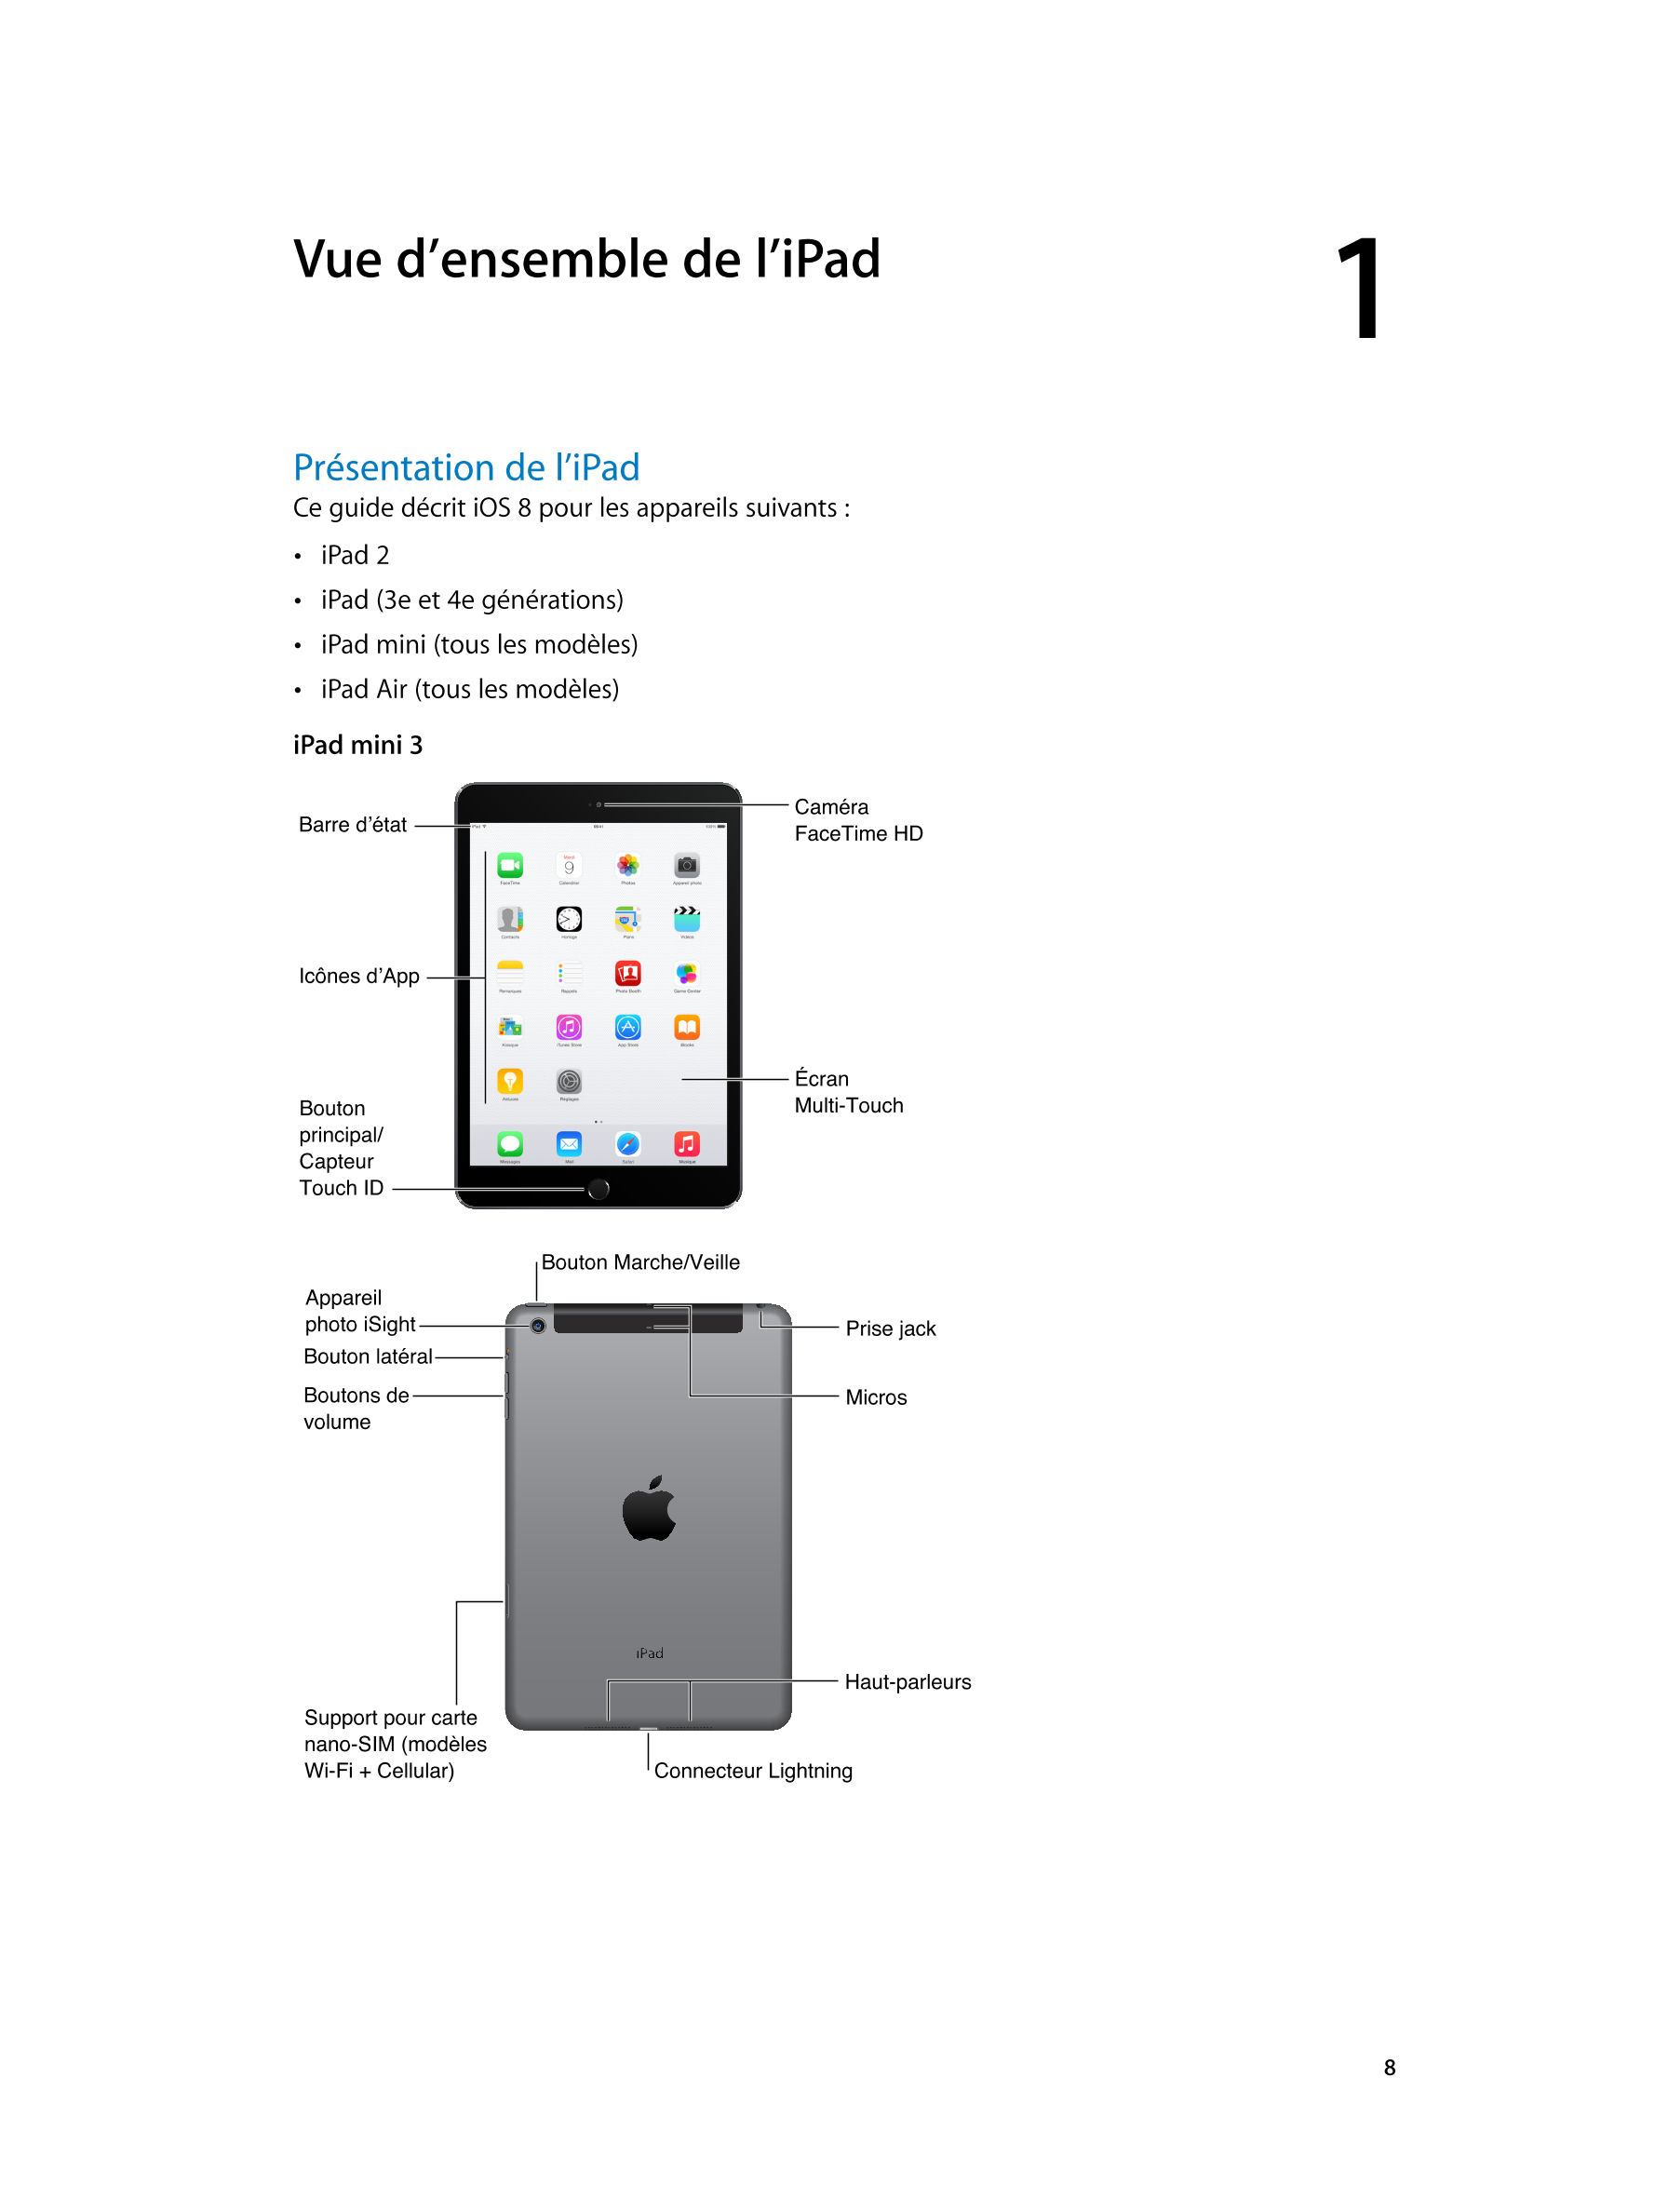   Vue d’ensemble de l’iPad 1         
Présentation de l’iPad
Ce guide décrit iOS  8 pour les appareils suivants  : 
•  iPad  2
•